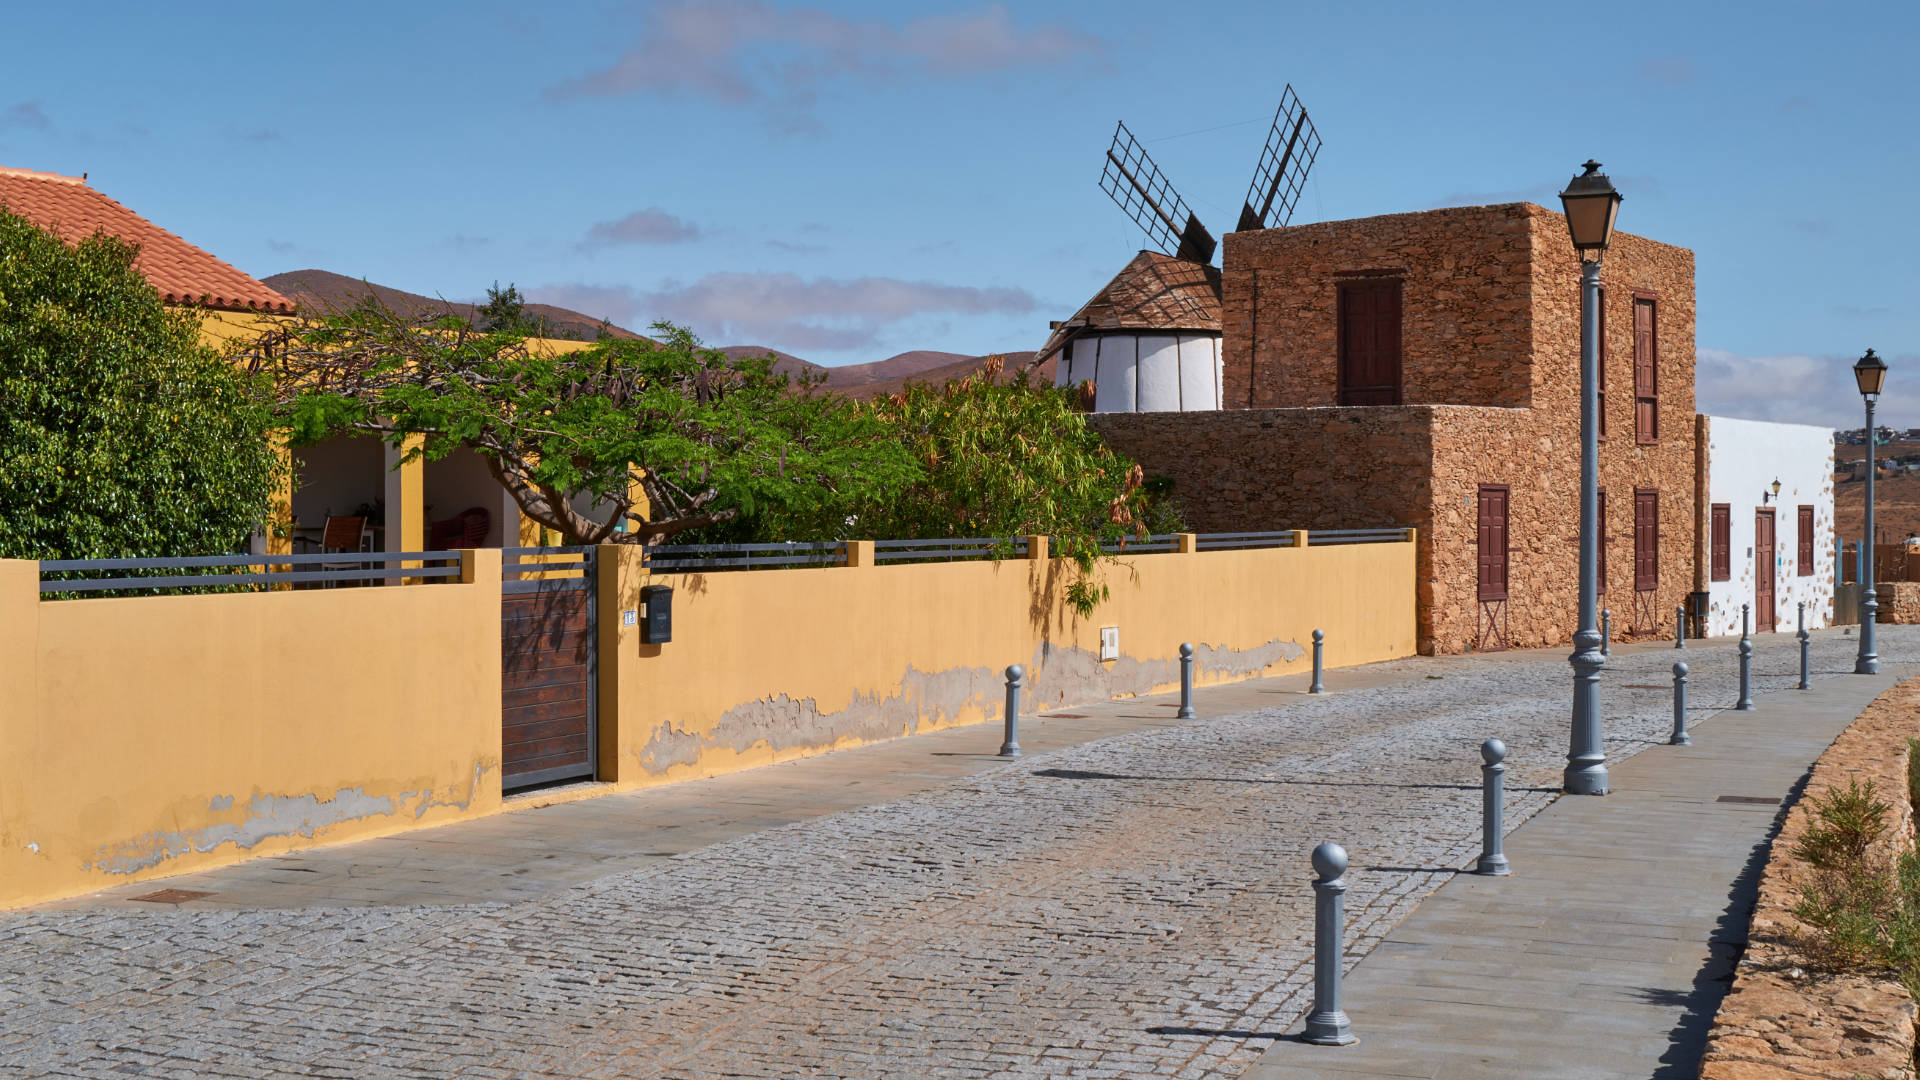 Mühlenmuseum "Los Molinos" Tiscamanita Fuerteventura.